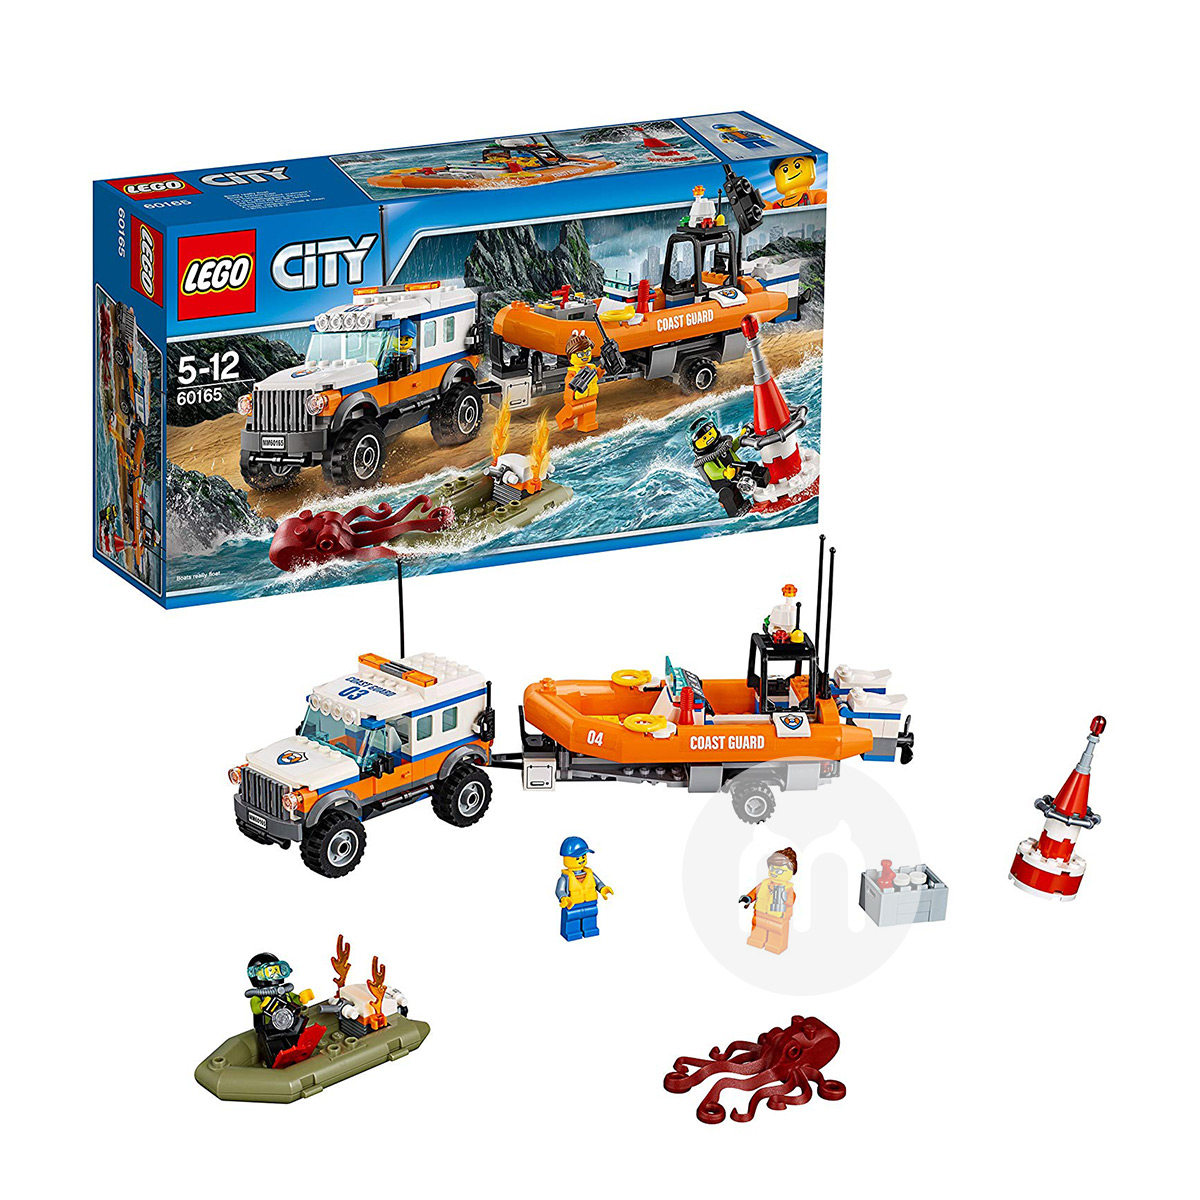 LEGO 덴마크시티시리즈 SUV 구명정 60165 해외판